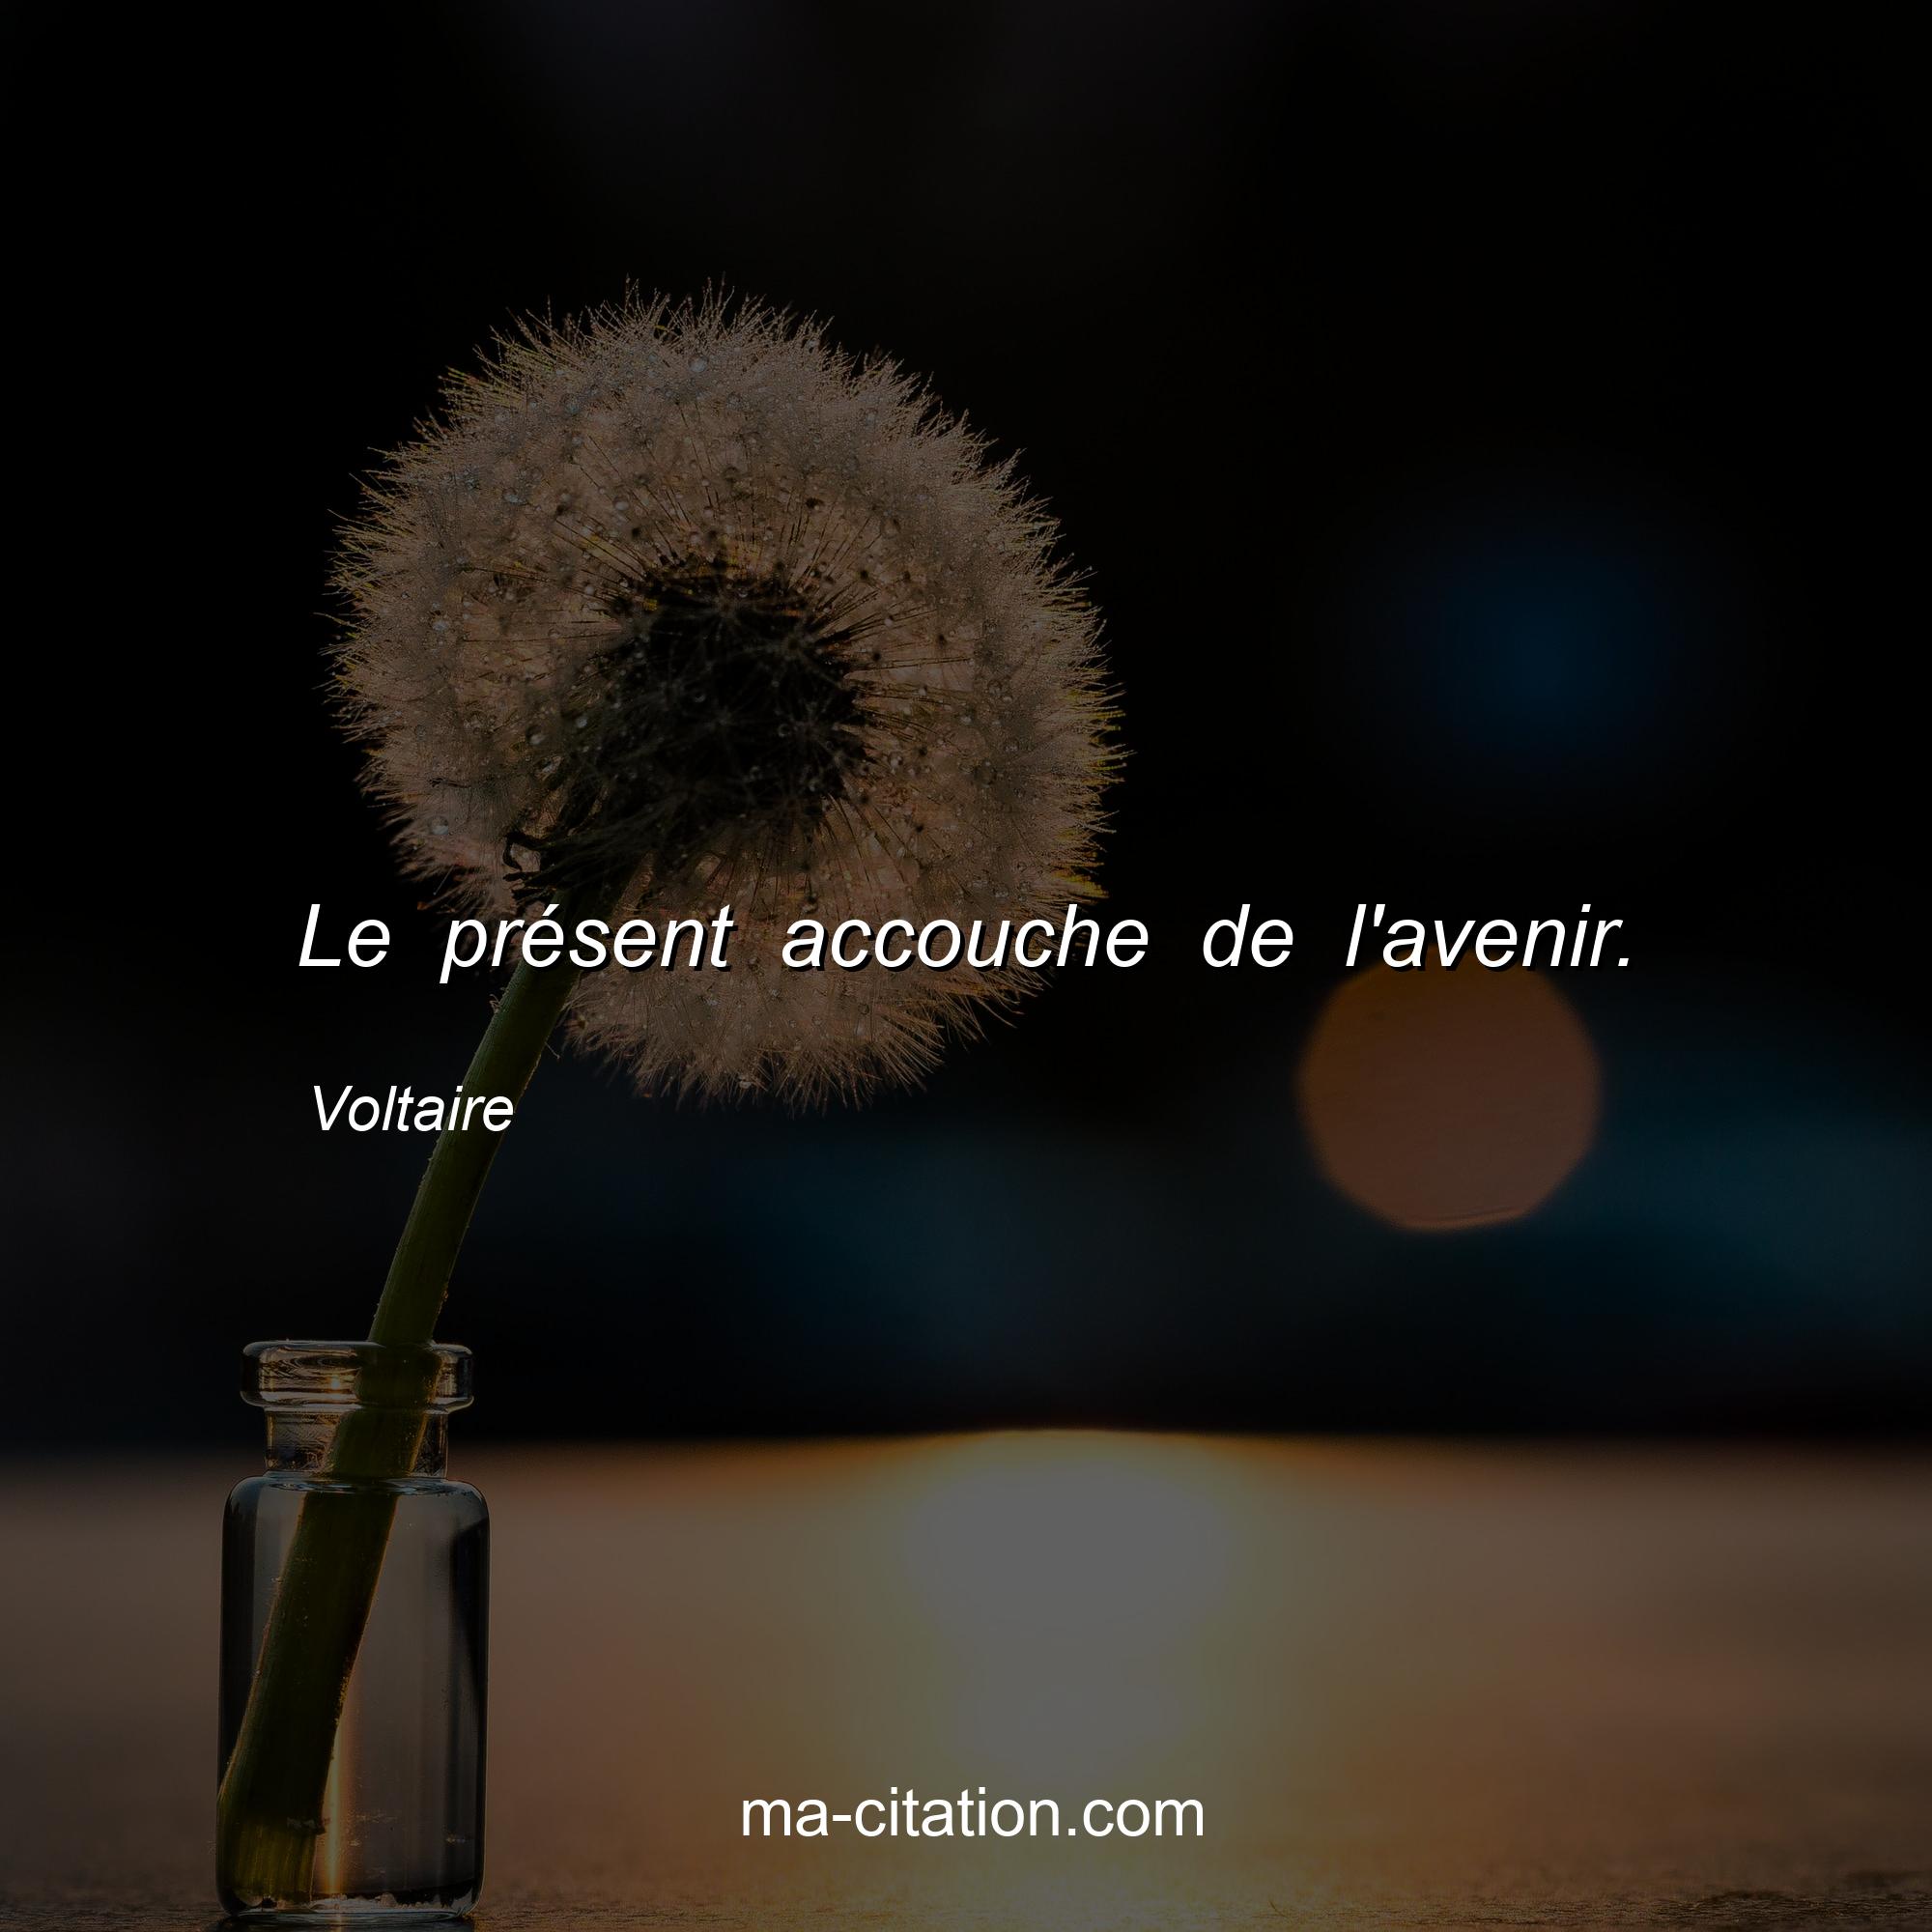 Voltaire : Le présent accouche de l'avenir.